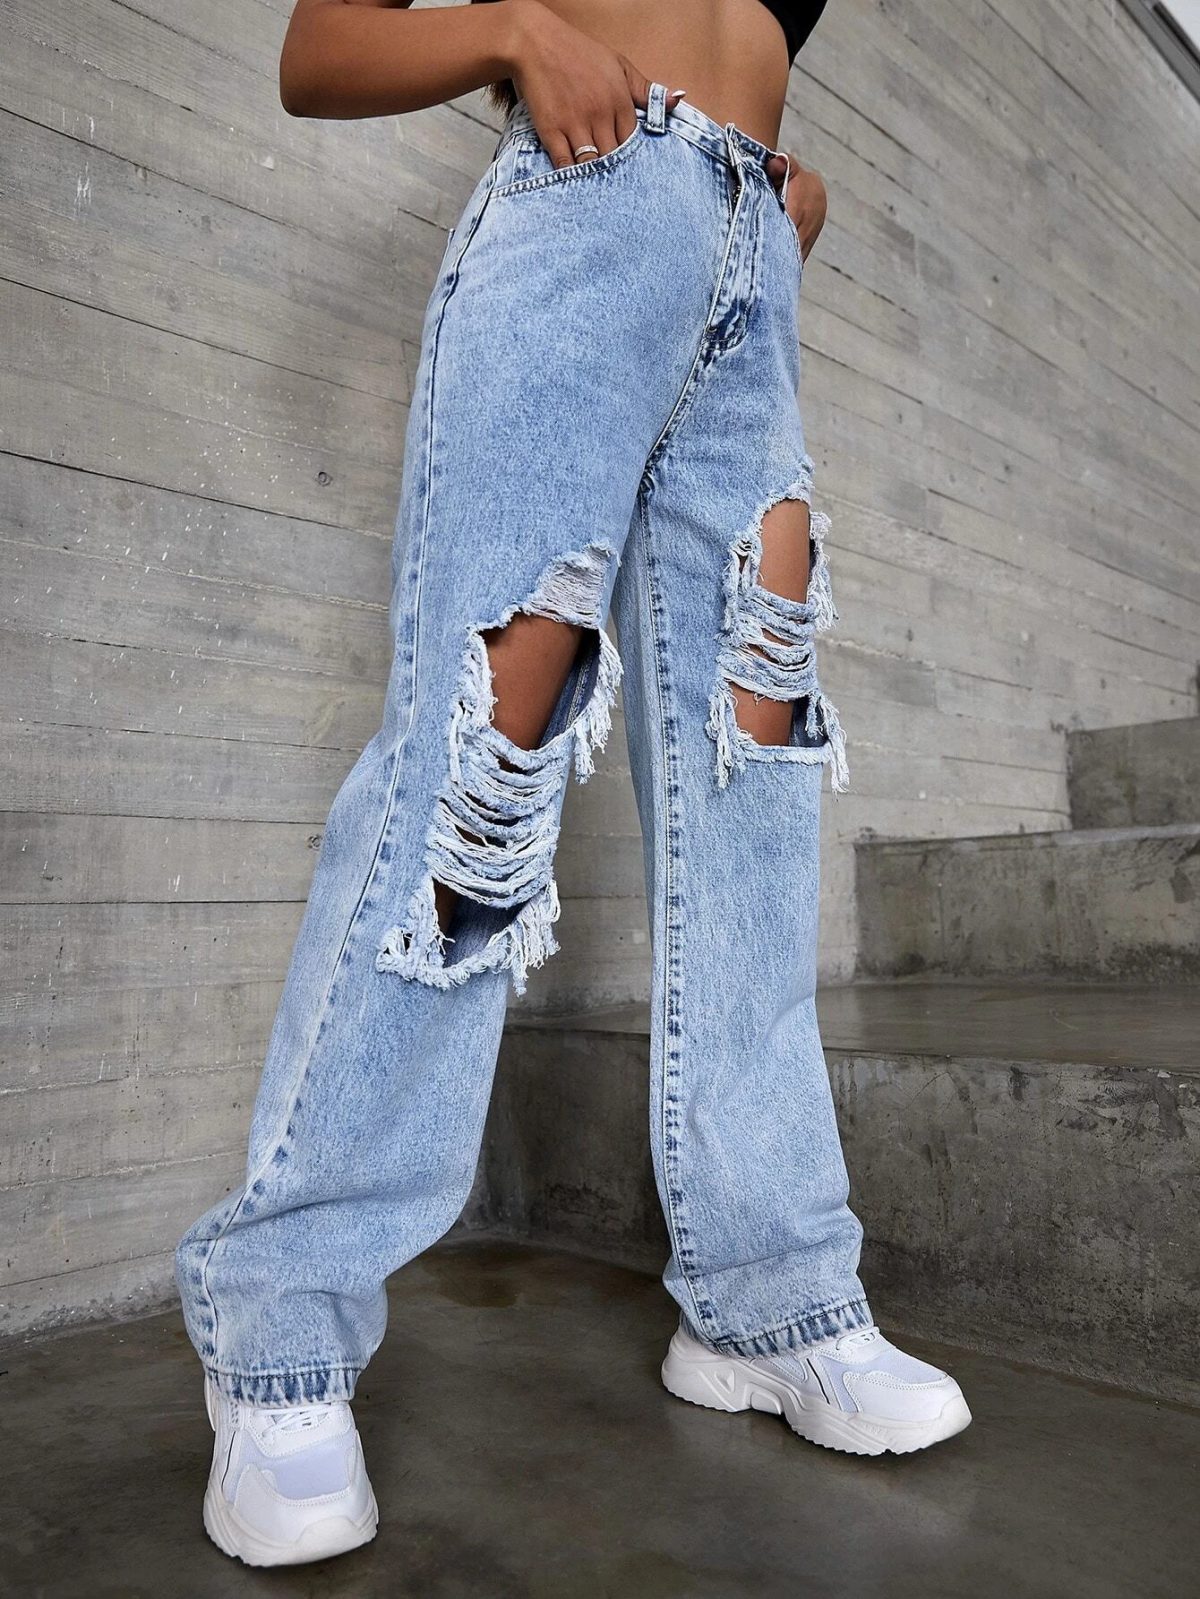 Ripped Cowboy Jeans - Pants - Uniqistic.com